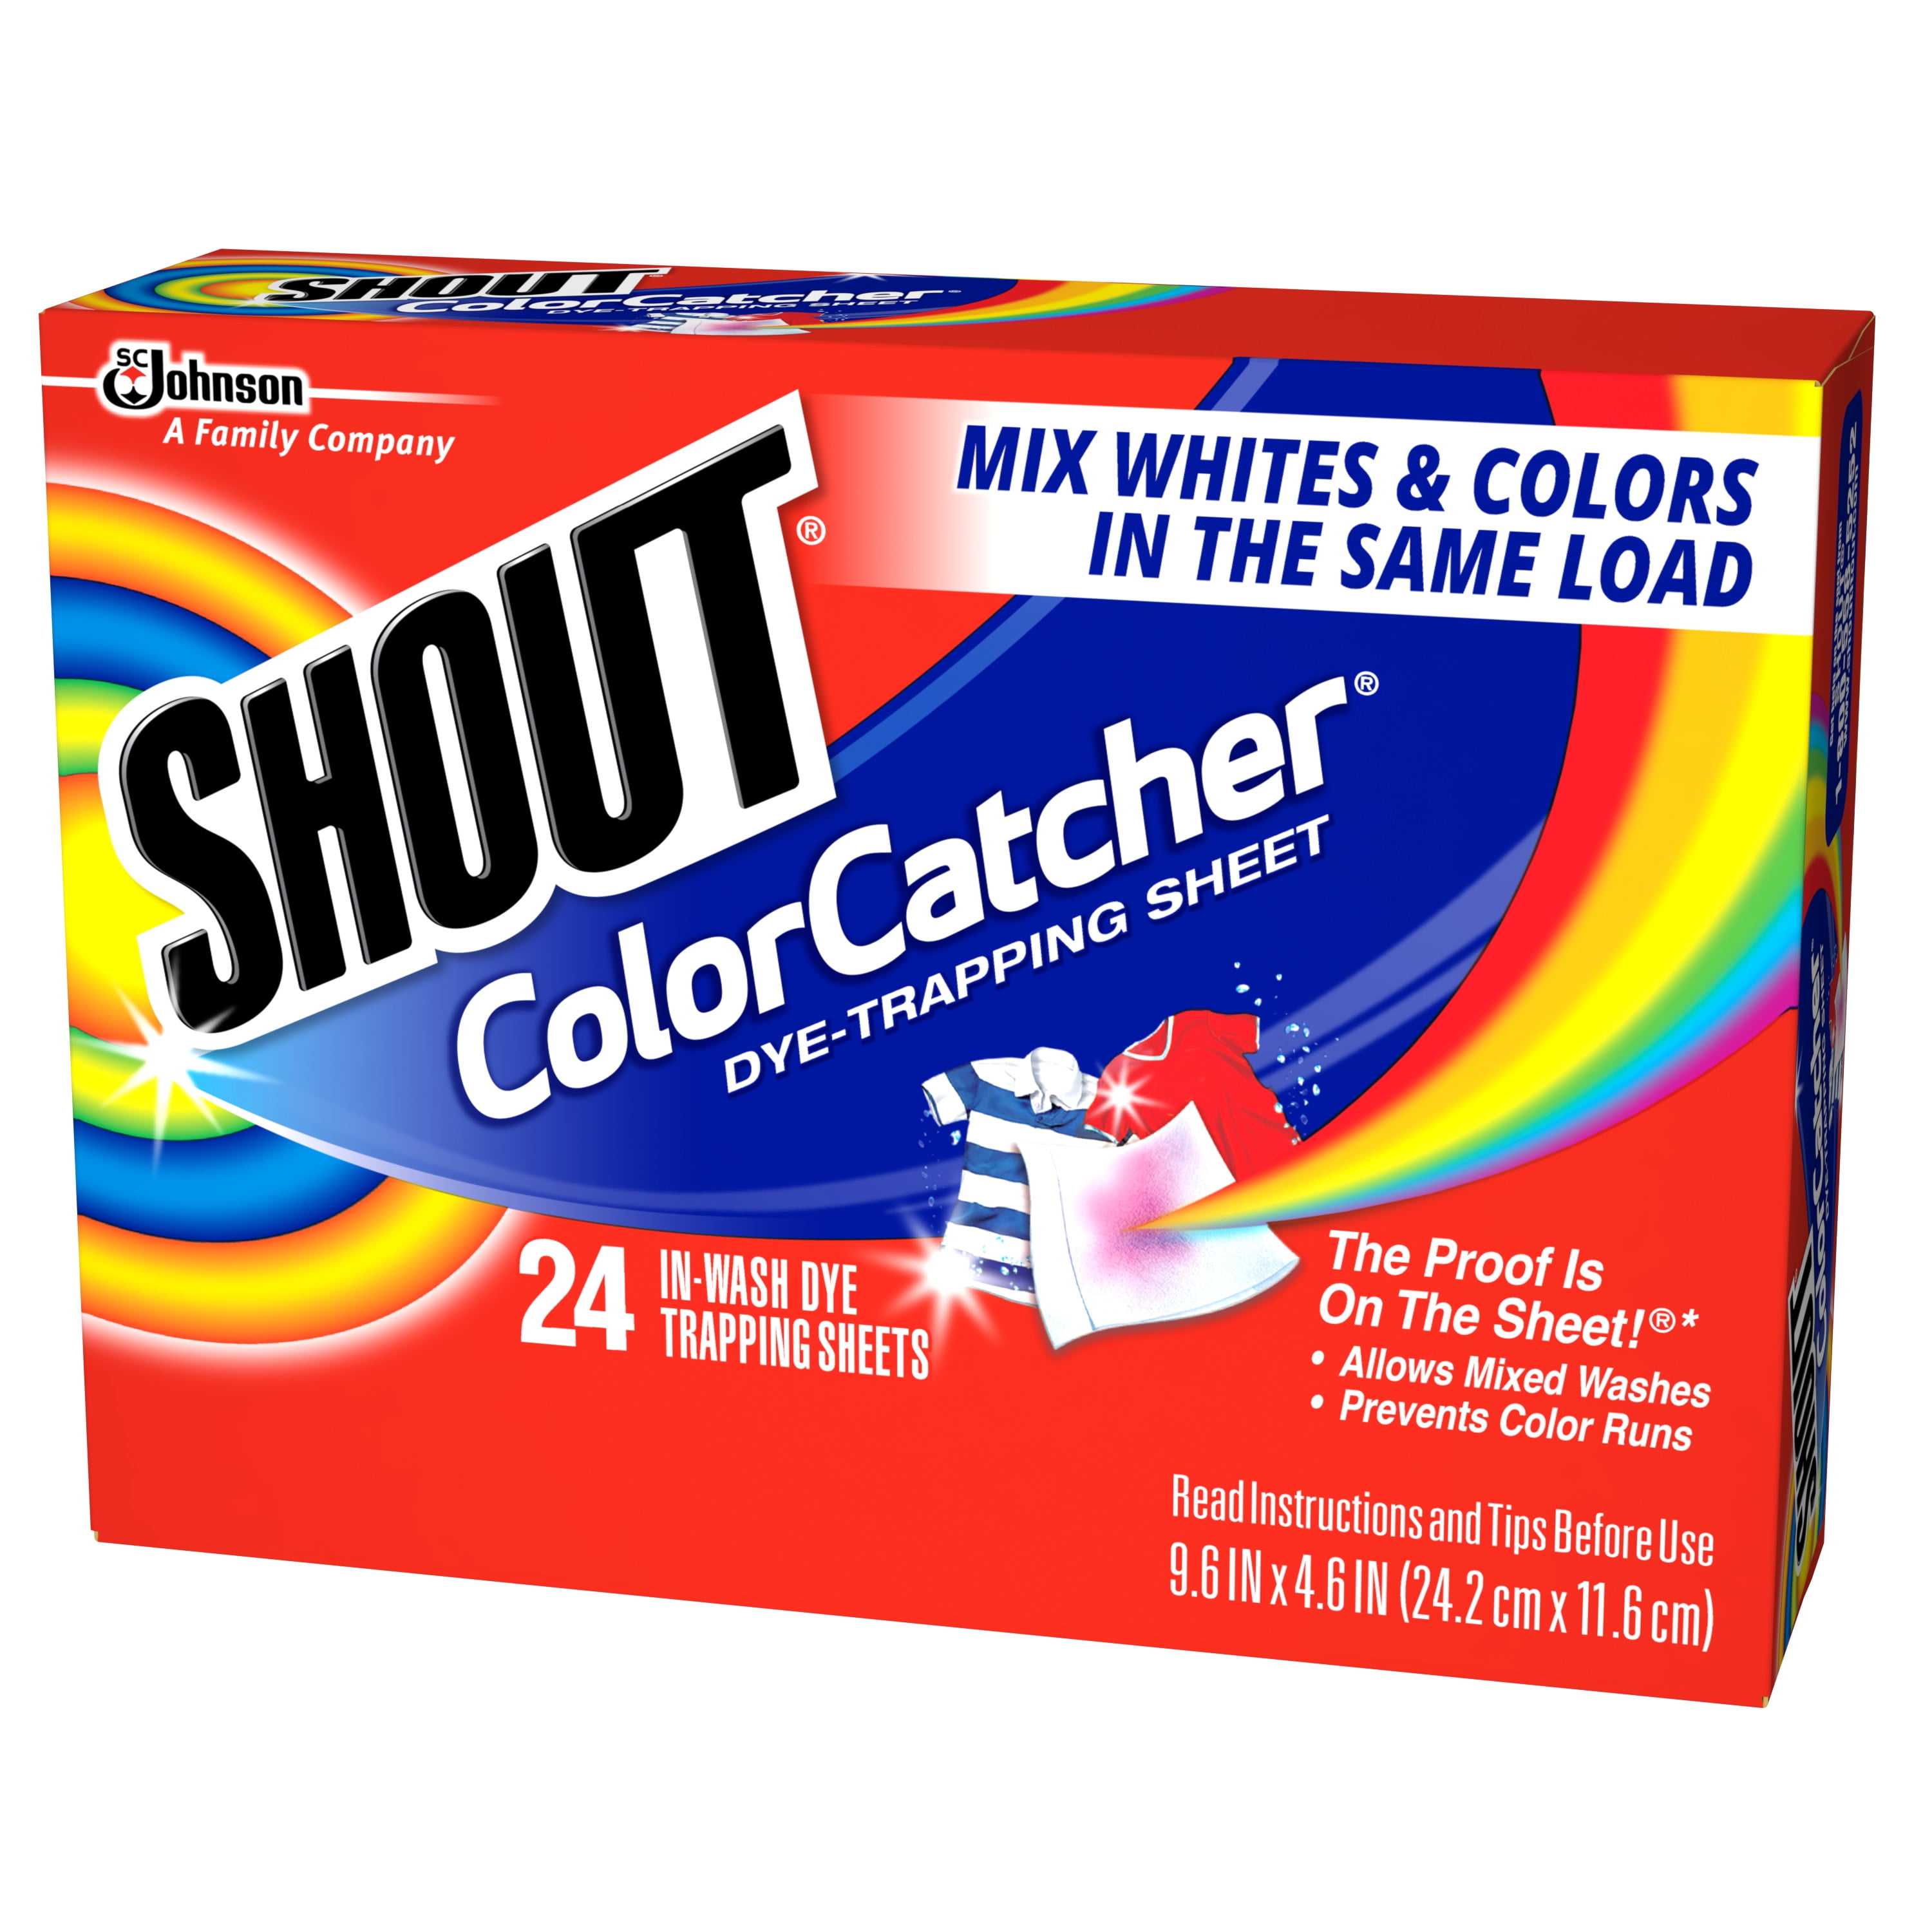 Shout Color Catcher Sheets for Laundry, Maintains Clothes Original Colors,  72 Count